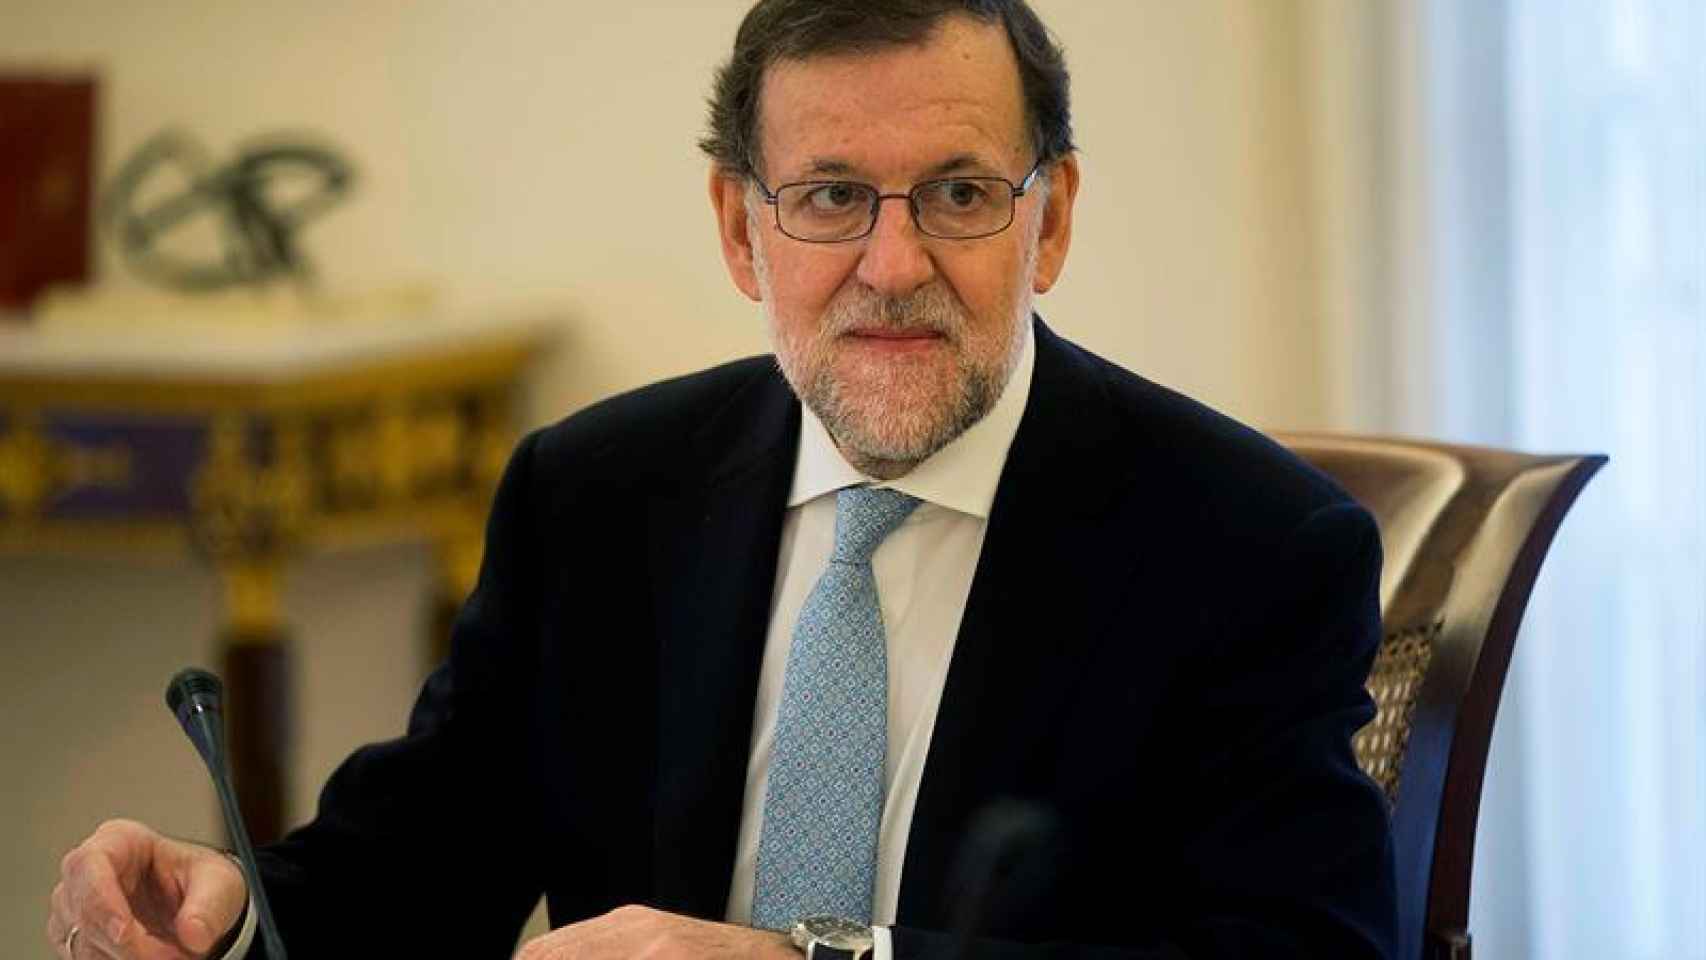 Rajoy al comienzo del último Consejo de Ministros de 2015 llevaba la corbata recta